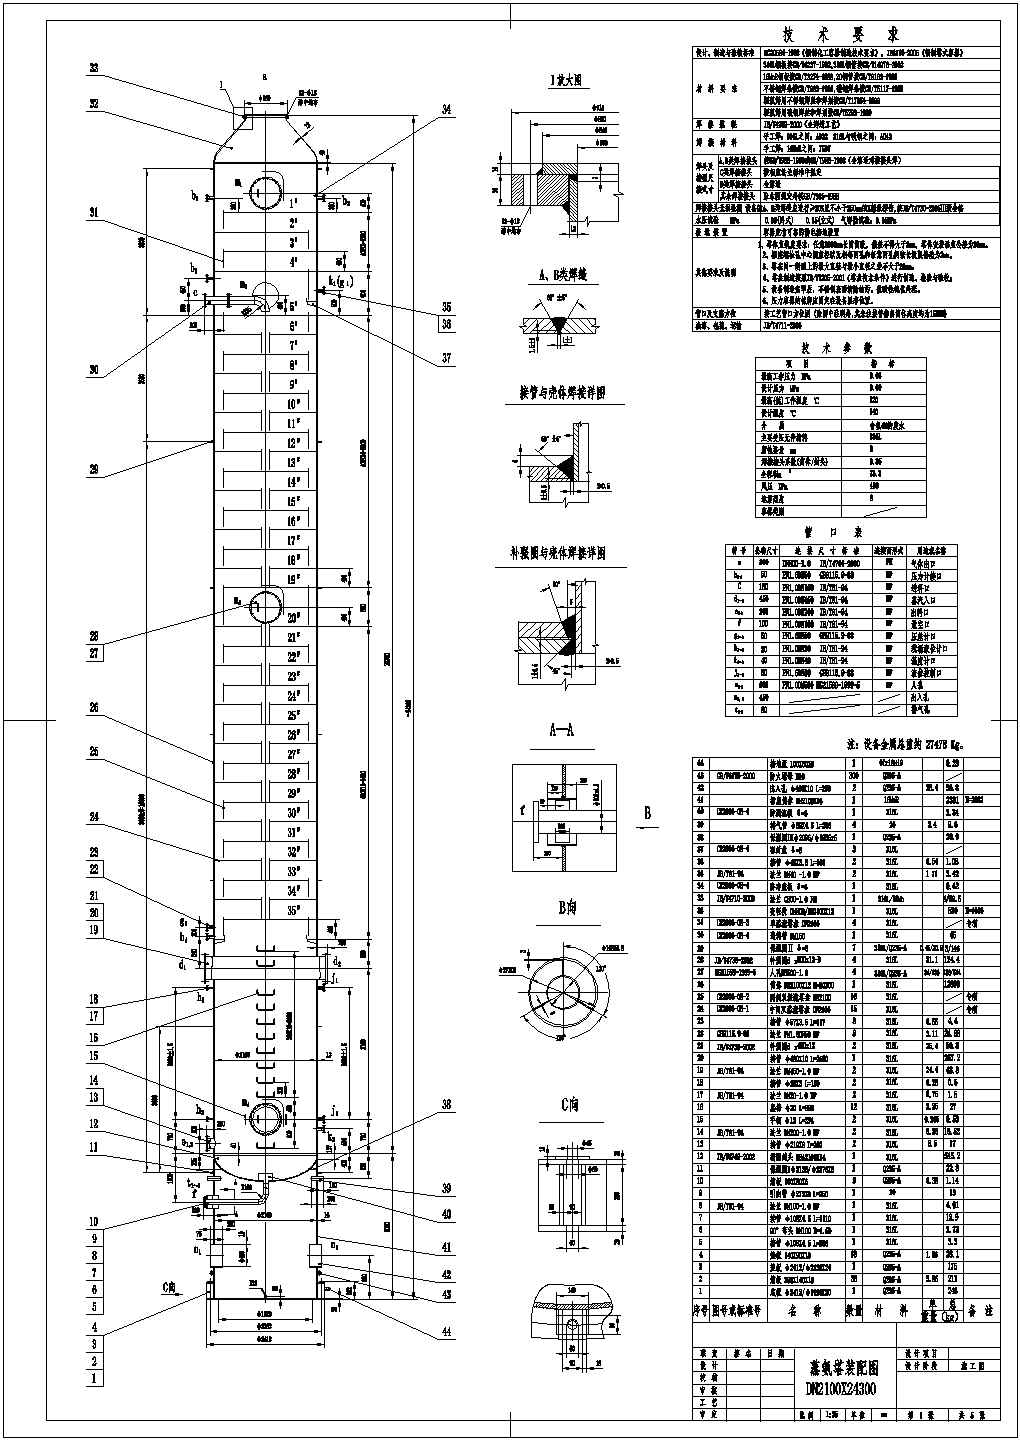 某公司自主设计研发蒸氨塔设备制作总图